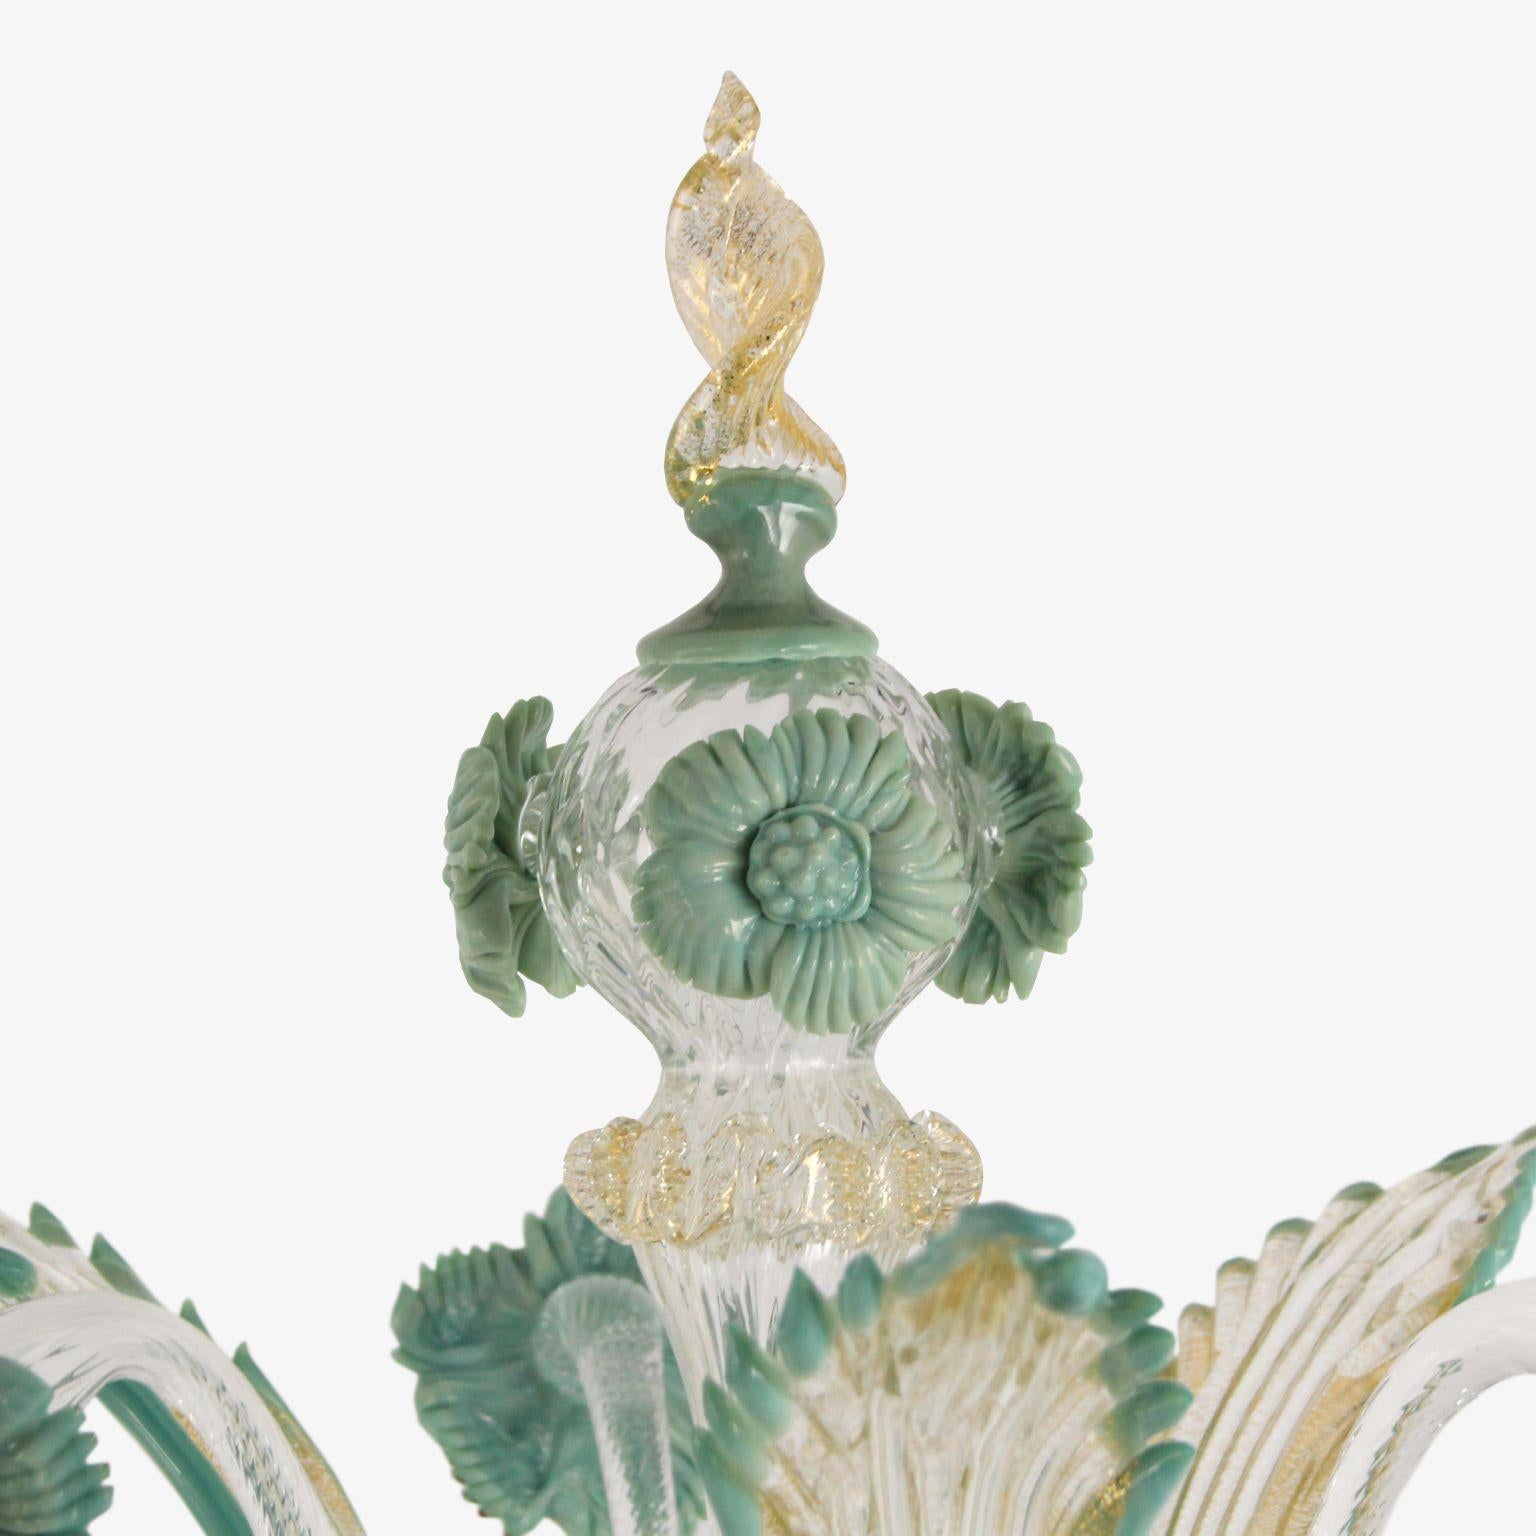 Luxueux flambeau rezzonico à 4 bras, en cristal de Murano, avec détails en pâte vitreuse de couleur or, gris-vert par Multiforme.
Cette lampe de table artistique est une œuvre d'éclairage élégante et délicate, colorée dans des tons pastel. La